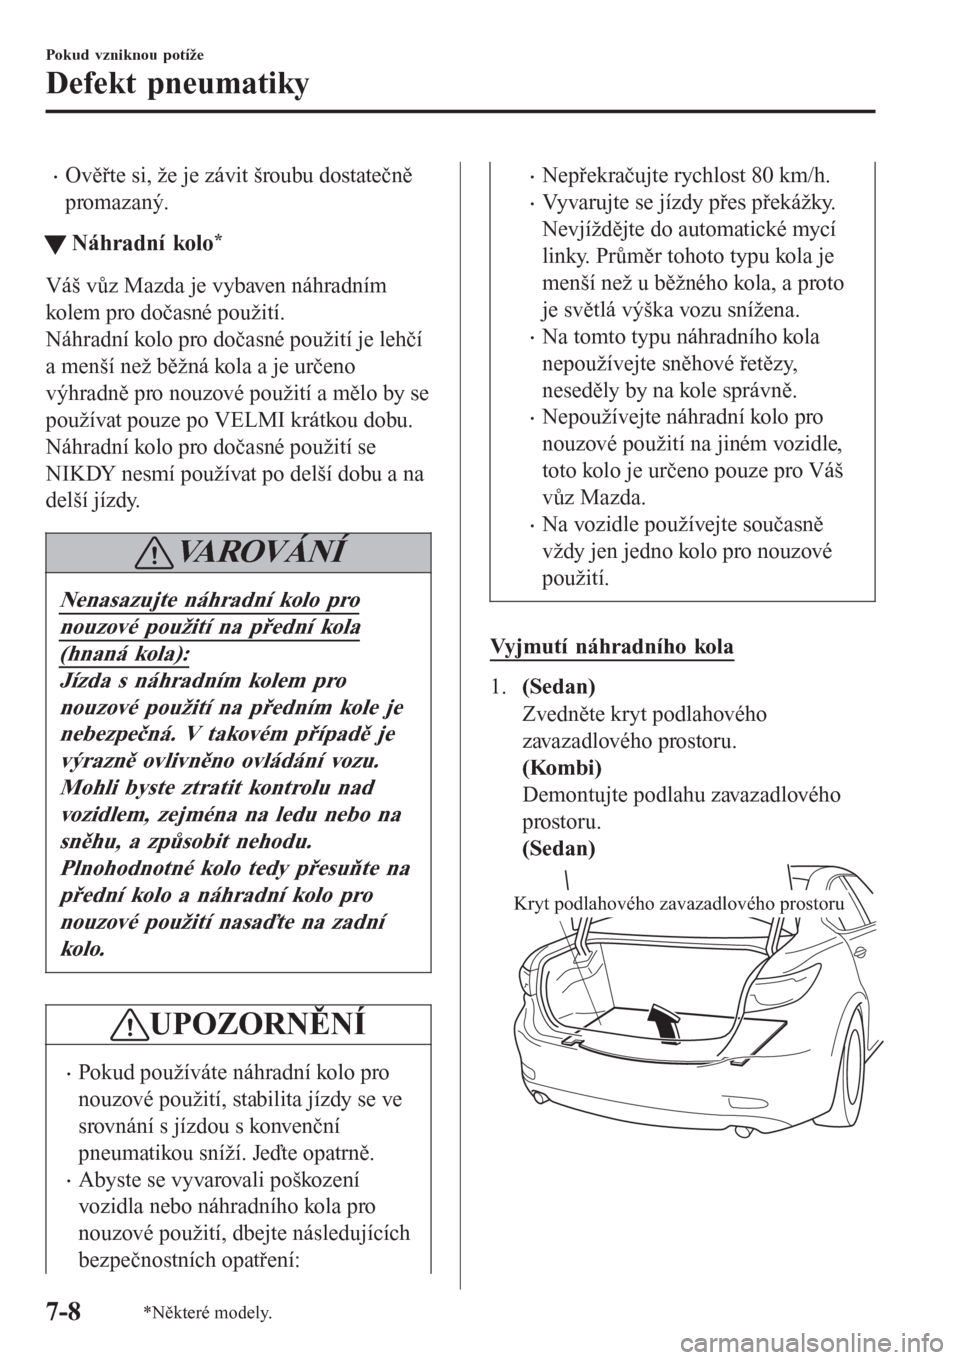 MAZDA MODEL 6 2016  Návod k obsluze (in Czech) •Ověřte si, že je závit šroubu dostatečně
promazaný.
tNáhradní kolo*
Váš vůz Mazda je vybaven náhradním
kolem pro dočasné použití.
Náhradní kolo pro dočasné použití je lehč